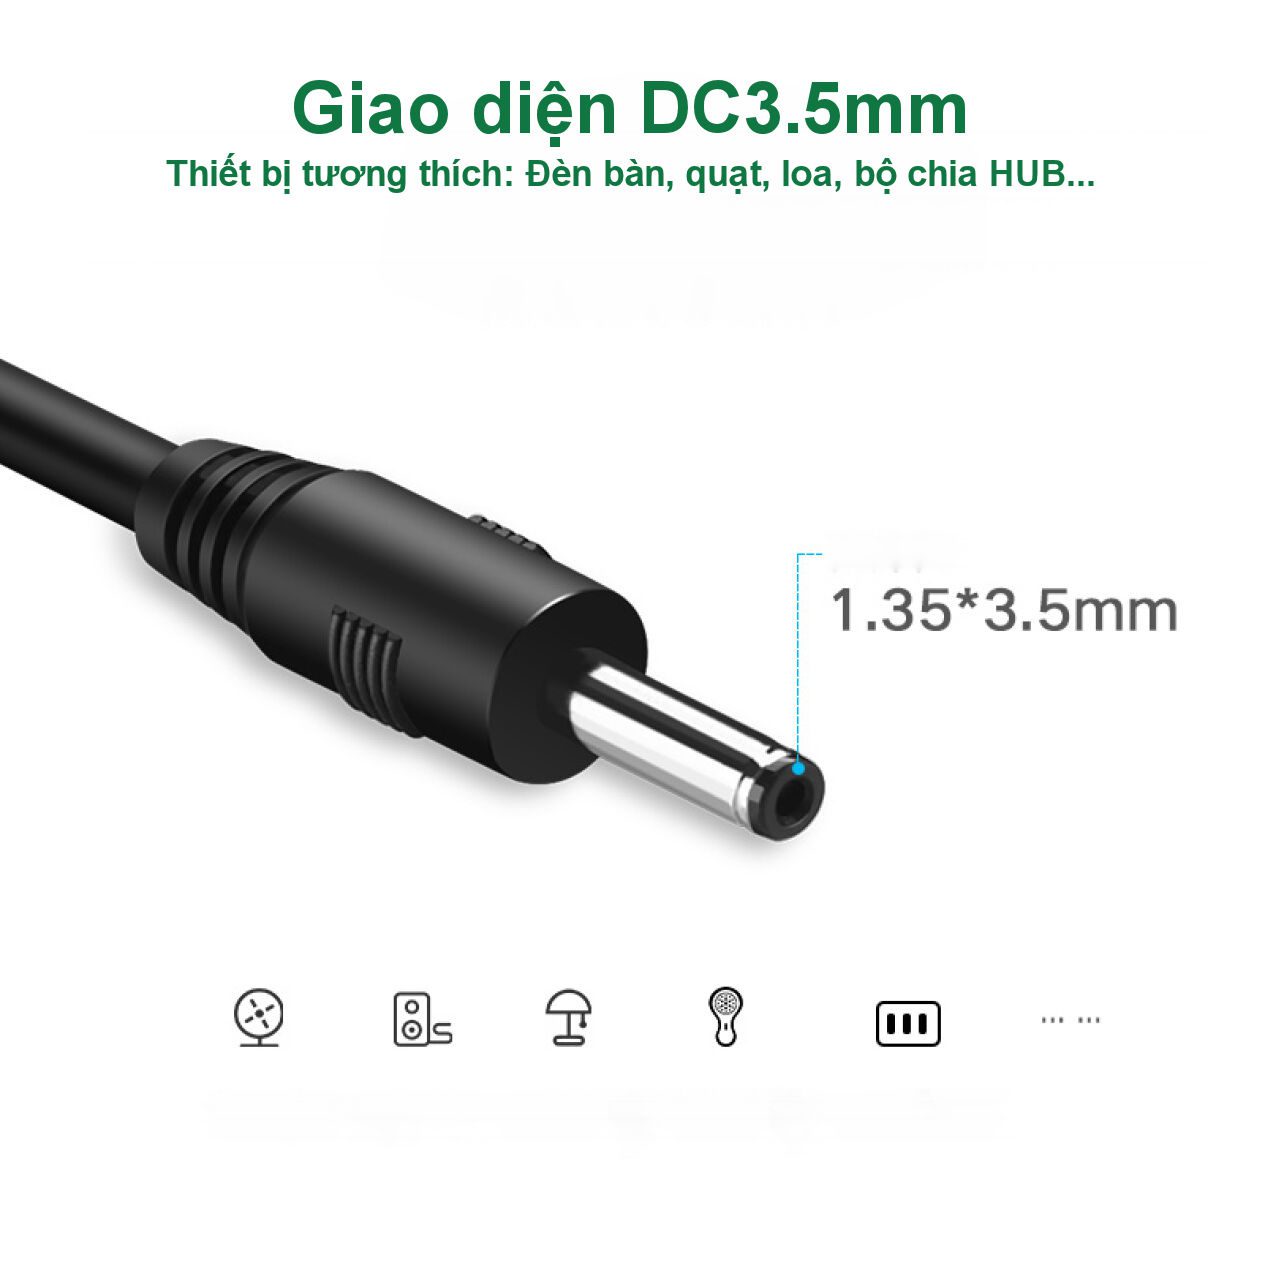 Dây chuyển nguồn UGREEN US277 - Chuyển USB 2.0 sang DC 3.5mm, dây dẫn thuần đồng chất lượng cao